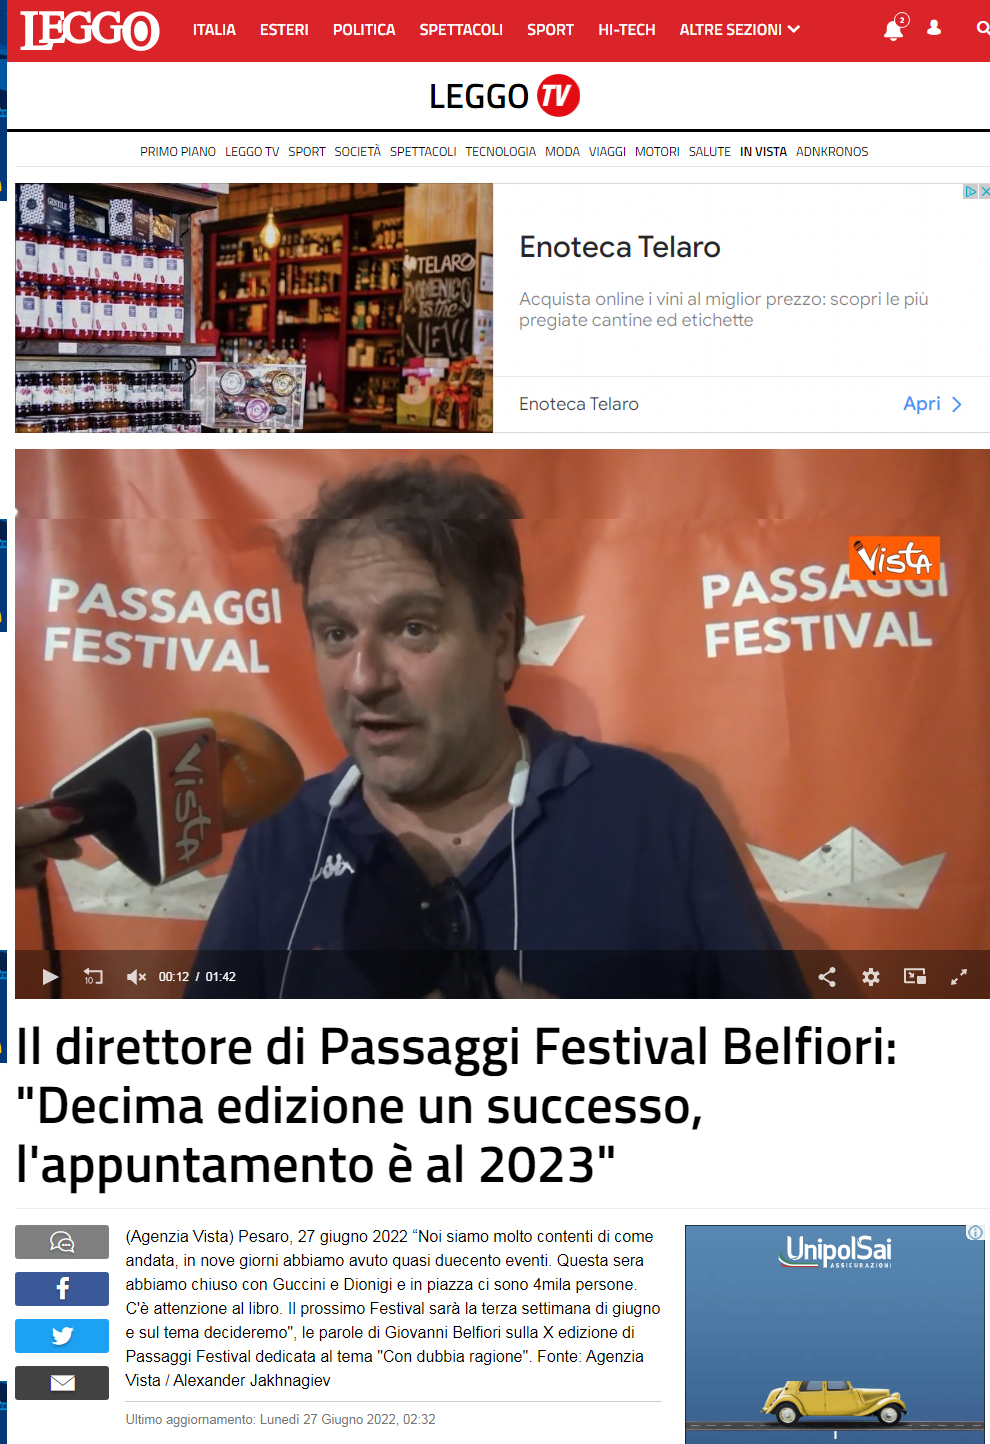 leggo-it-video-invista-il-direttore-di-passaggi-festival-belfiori-decima-edizione-un-successo-l-appuntamento-e-al-2023